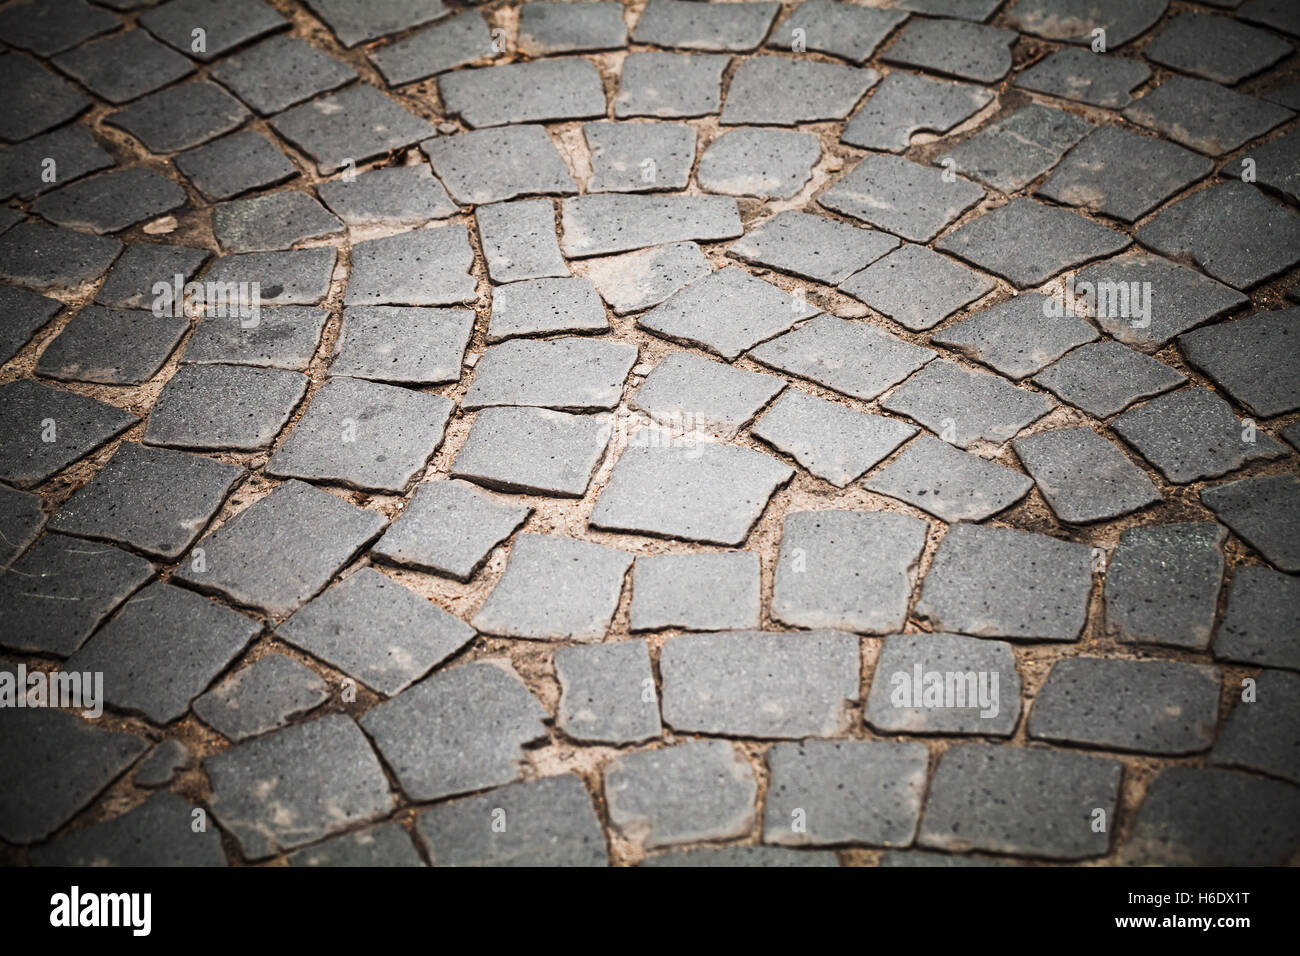 Dunkel grau gepflasterten Straße, Stein Straßenpflaster, Hintergrundfoto mit selektiven Fokus und Vignette-Effekt Stockfoto